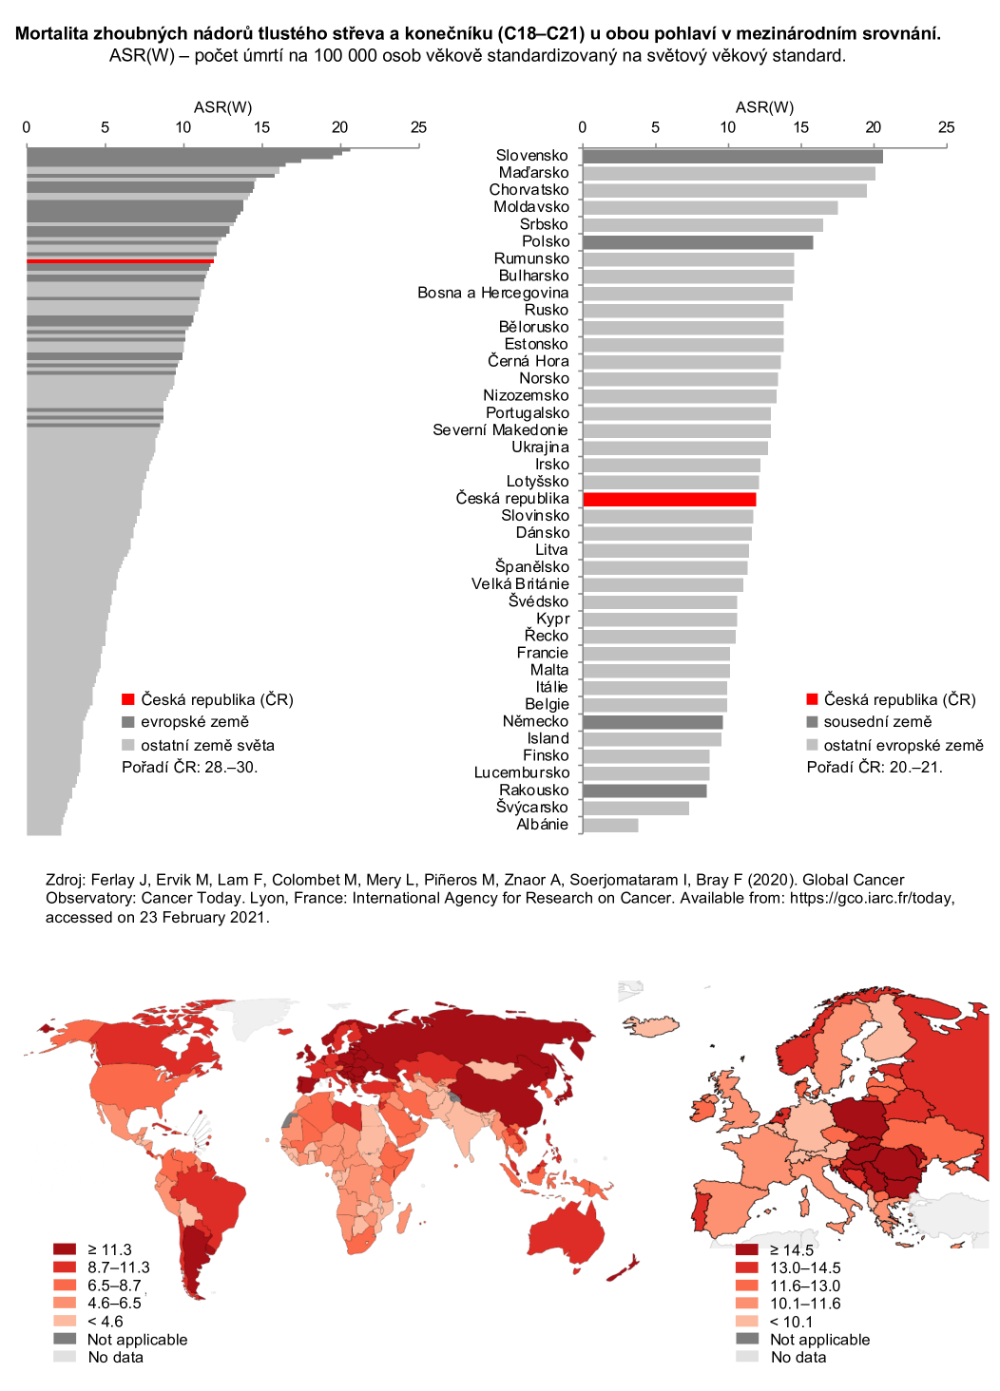 Obrázek 2a: Mortalita nádorů tlustého střeva a konečníku v mezinárodním srovnání – obě pohlaví. ASR(W) - počet zemřelých na nádor na 100 000 osob věkově standardizovaný na světový věkový standard. Zdroj: GLOBOCAN 2020